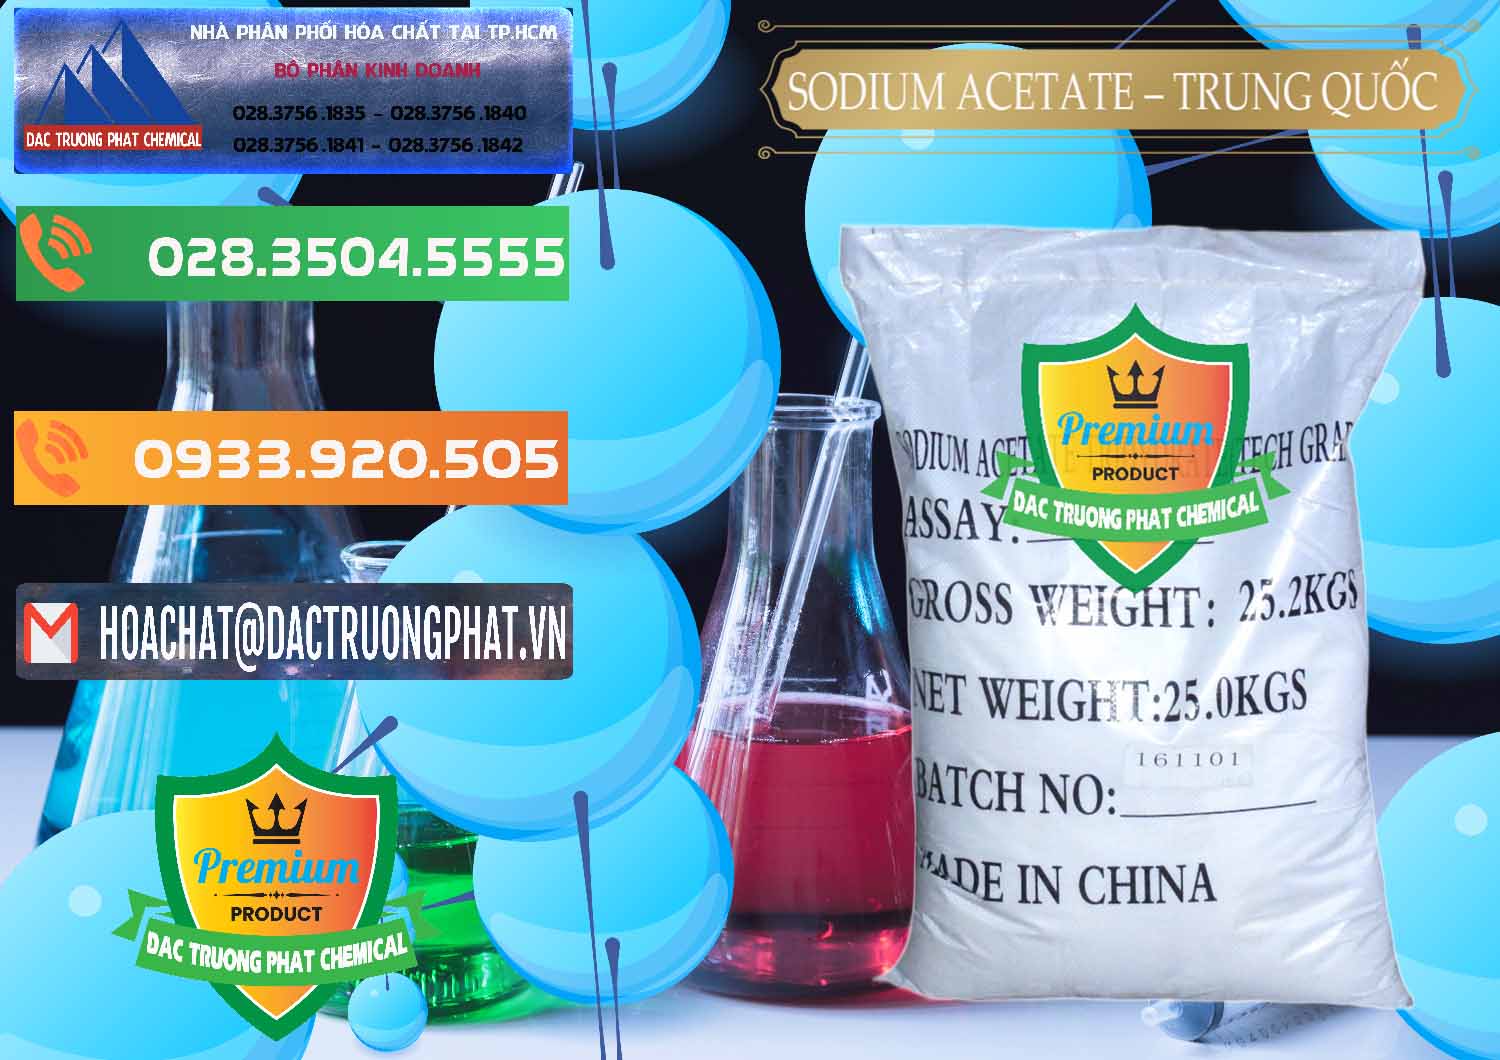 Nơi bán Sodium Acetate - Natri Acetate Trung Quốc China - 0134 - Nơi chuyên cung cấp và bán hóa chất tại TP.HCM - hoachatxulynuoc.com.vn